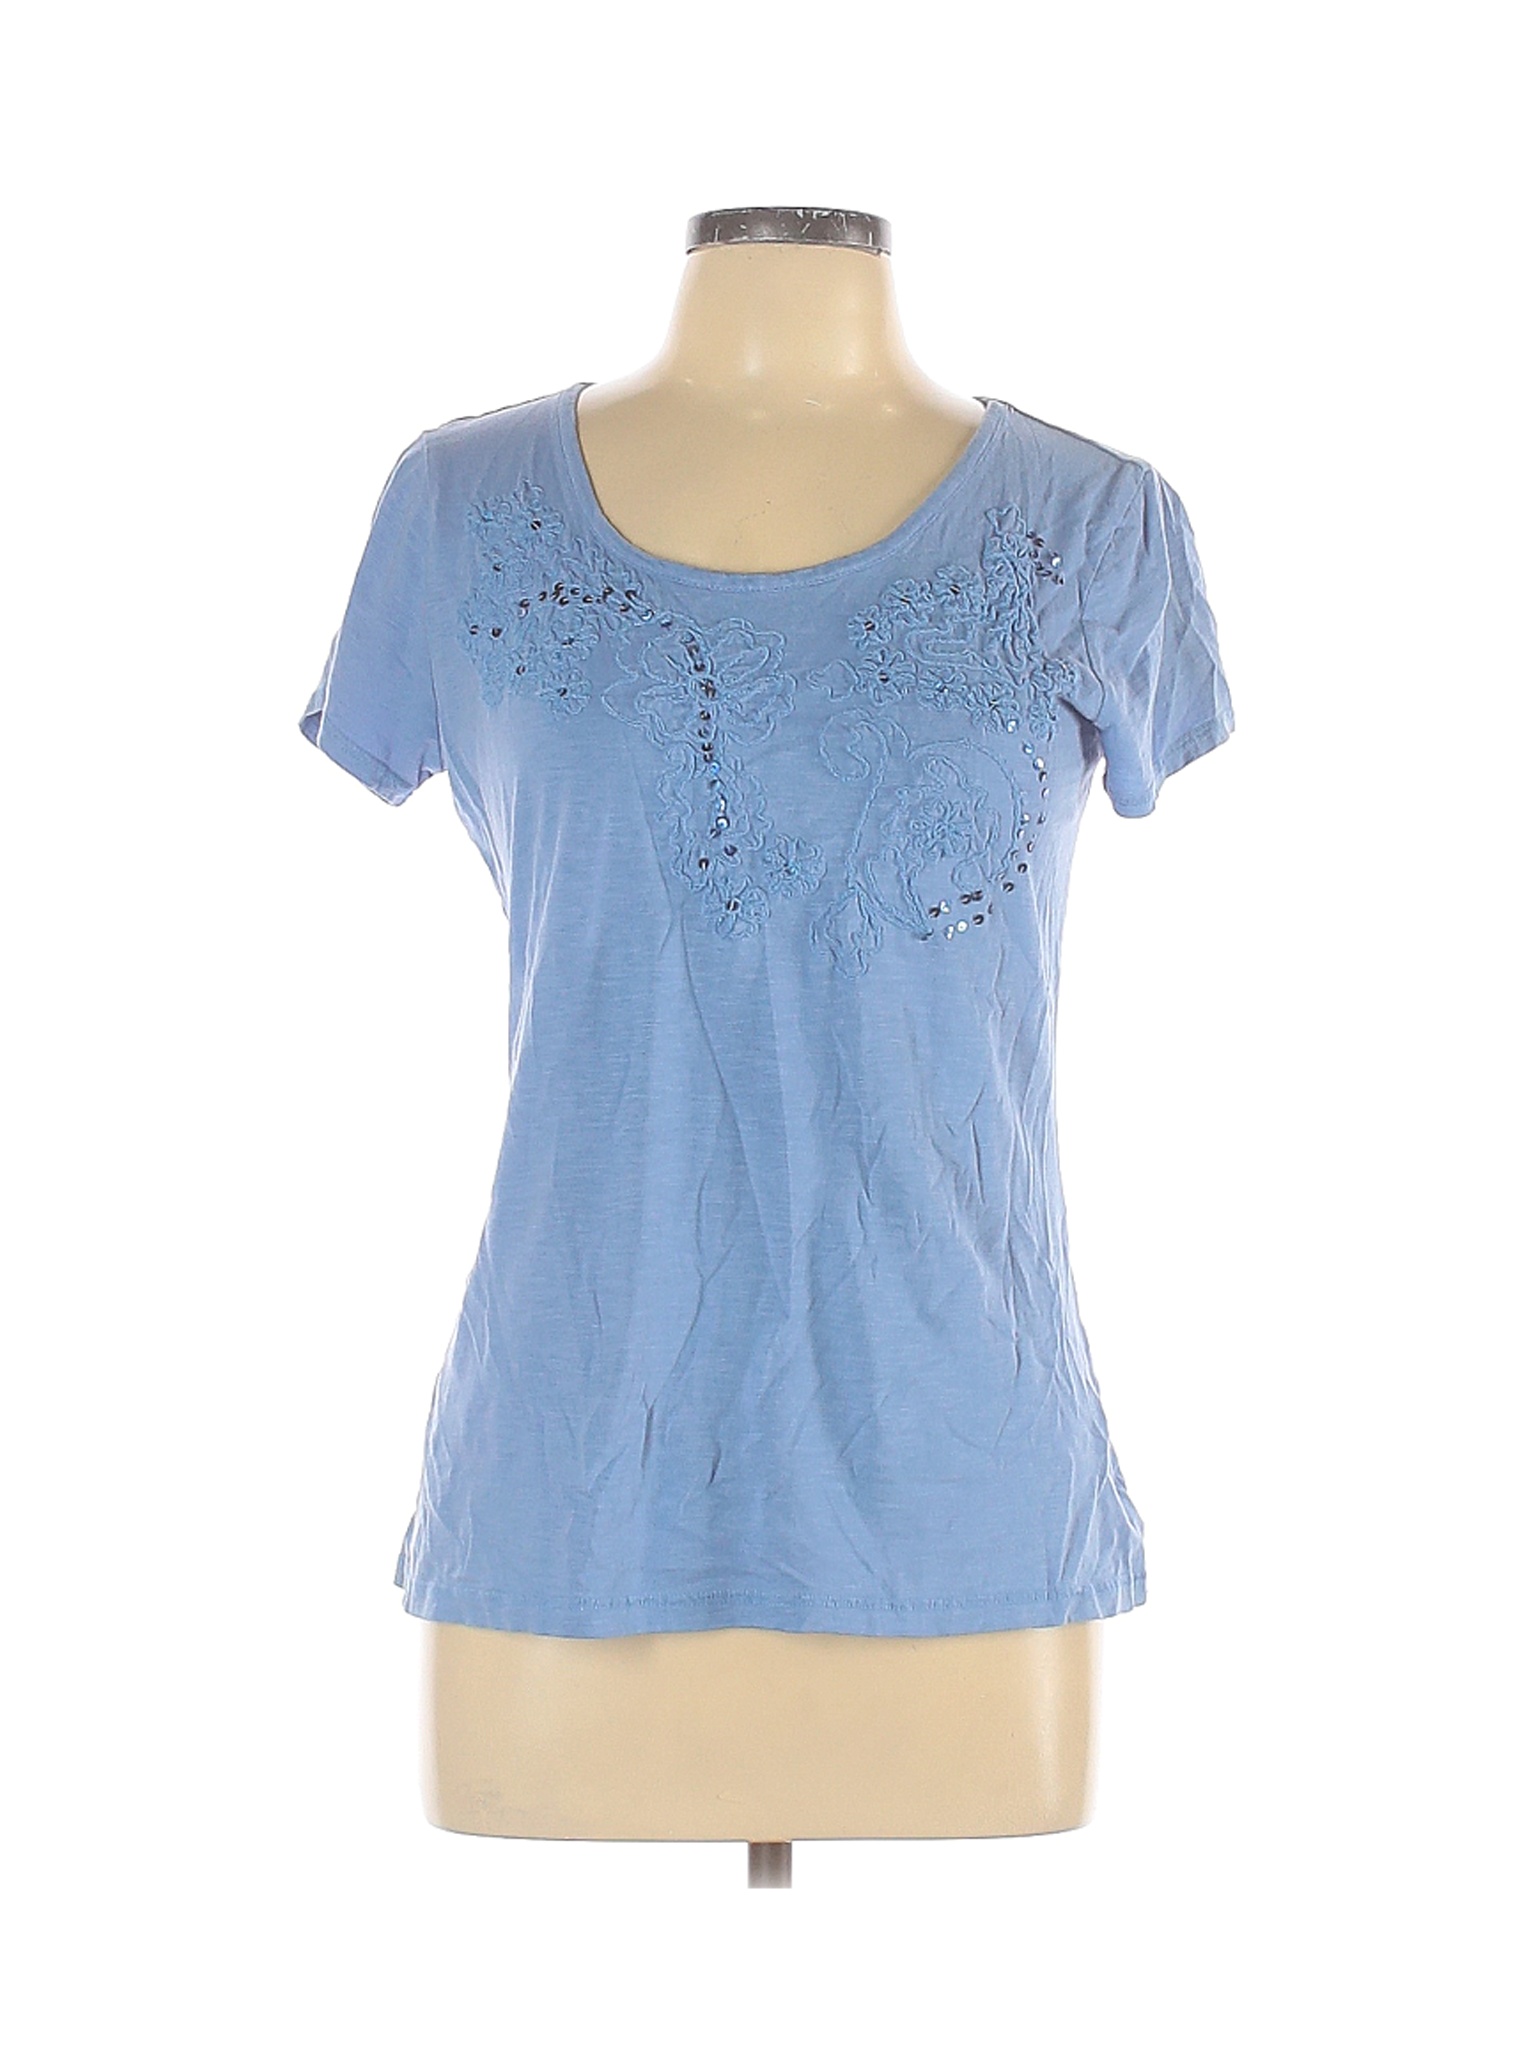 G.H. Bass & Co. Women Blue Short Sleeve T-Shirt M | eBay